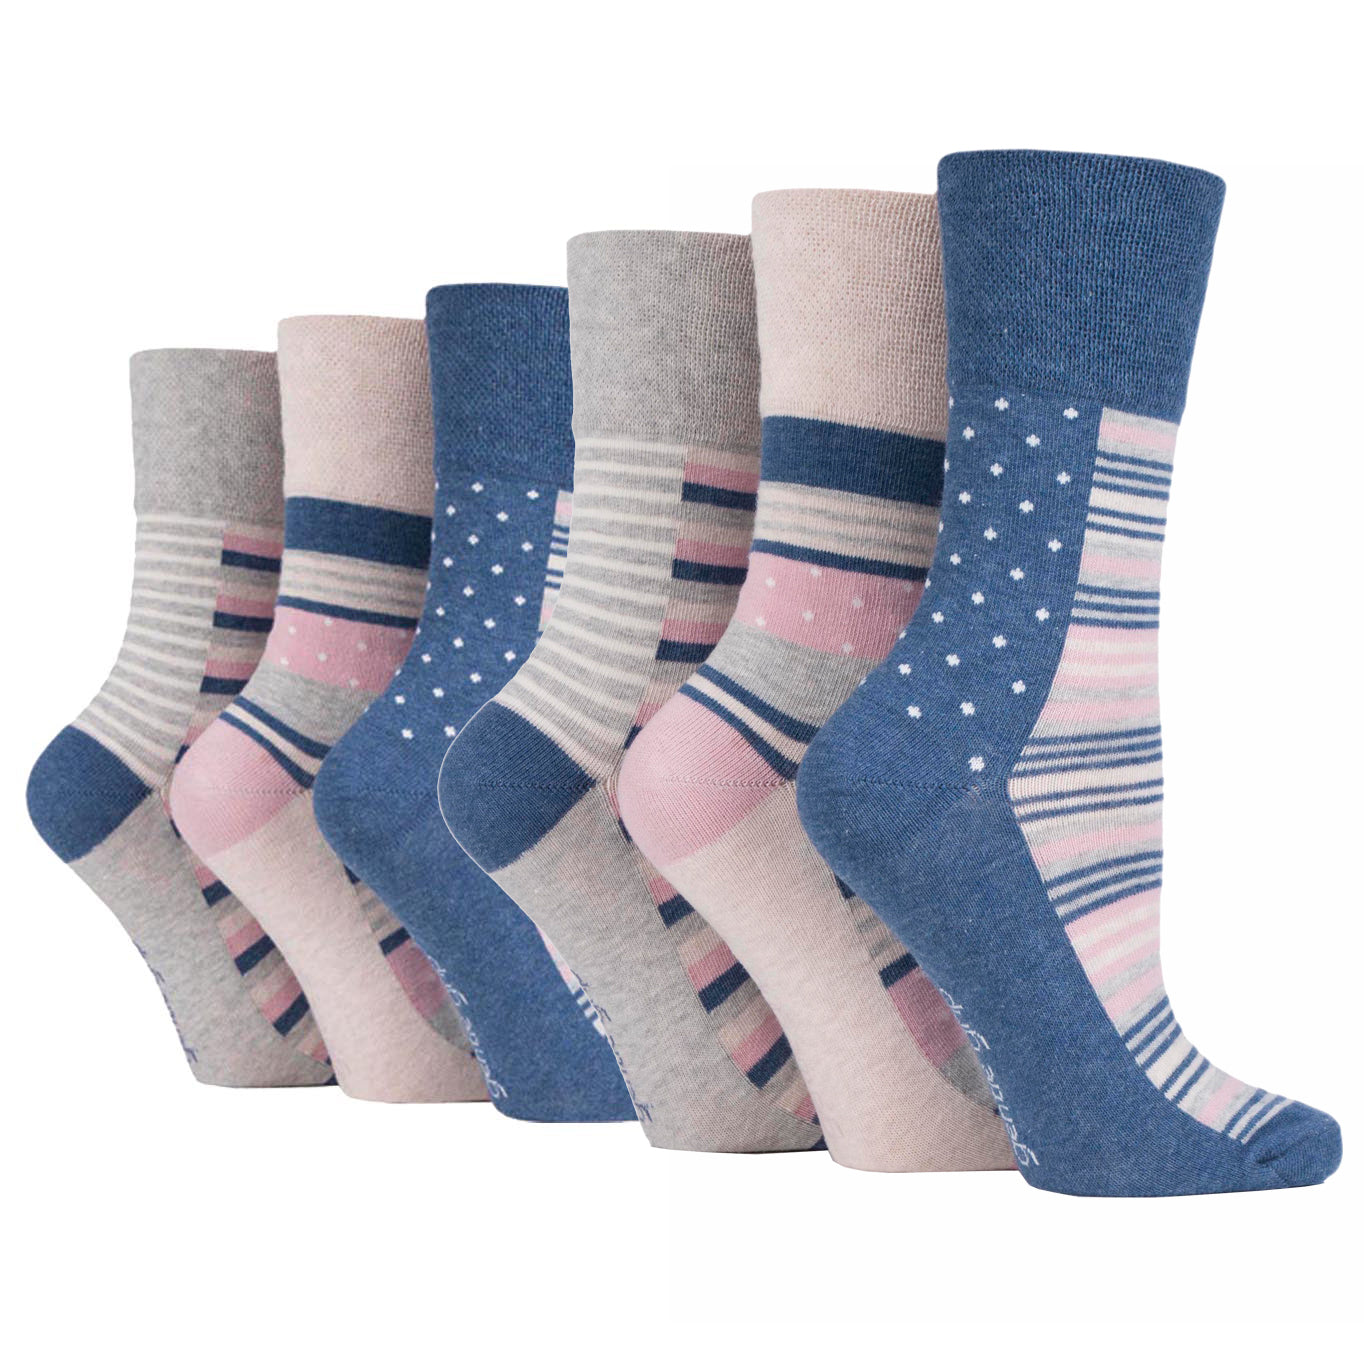 6 Pairs Ladies Gentle Grip Cotton Socks Weekender Navy/Cream/Grey